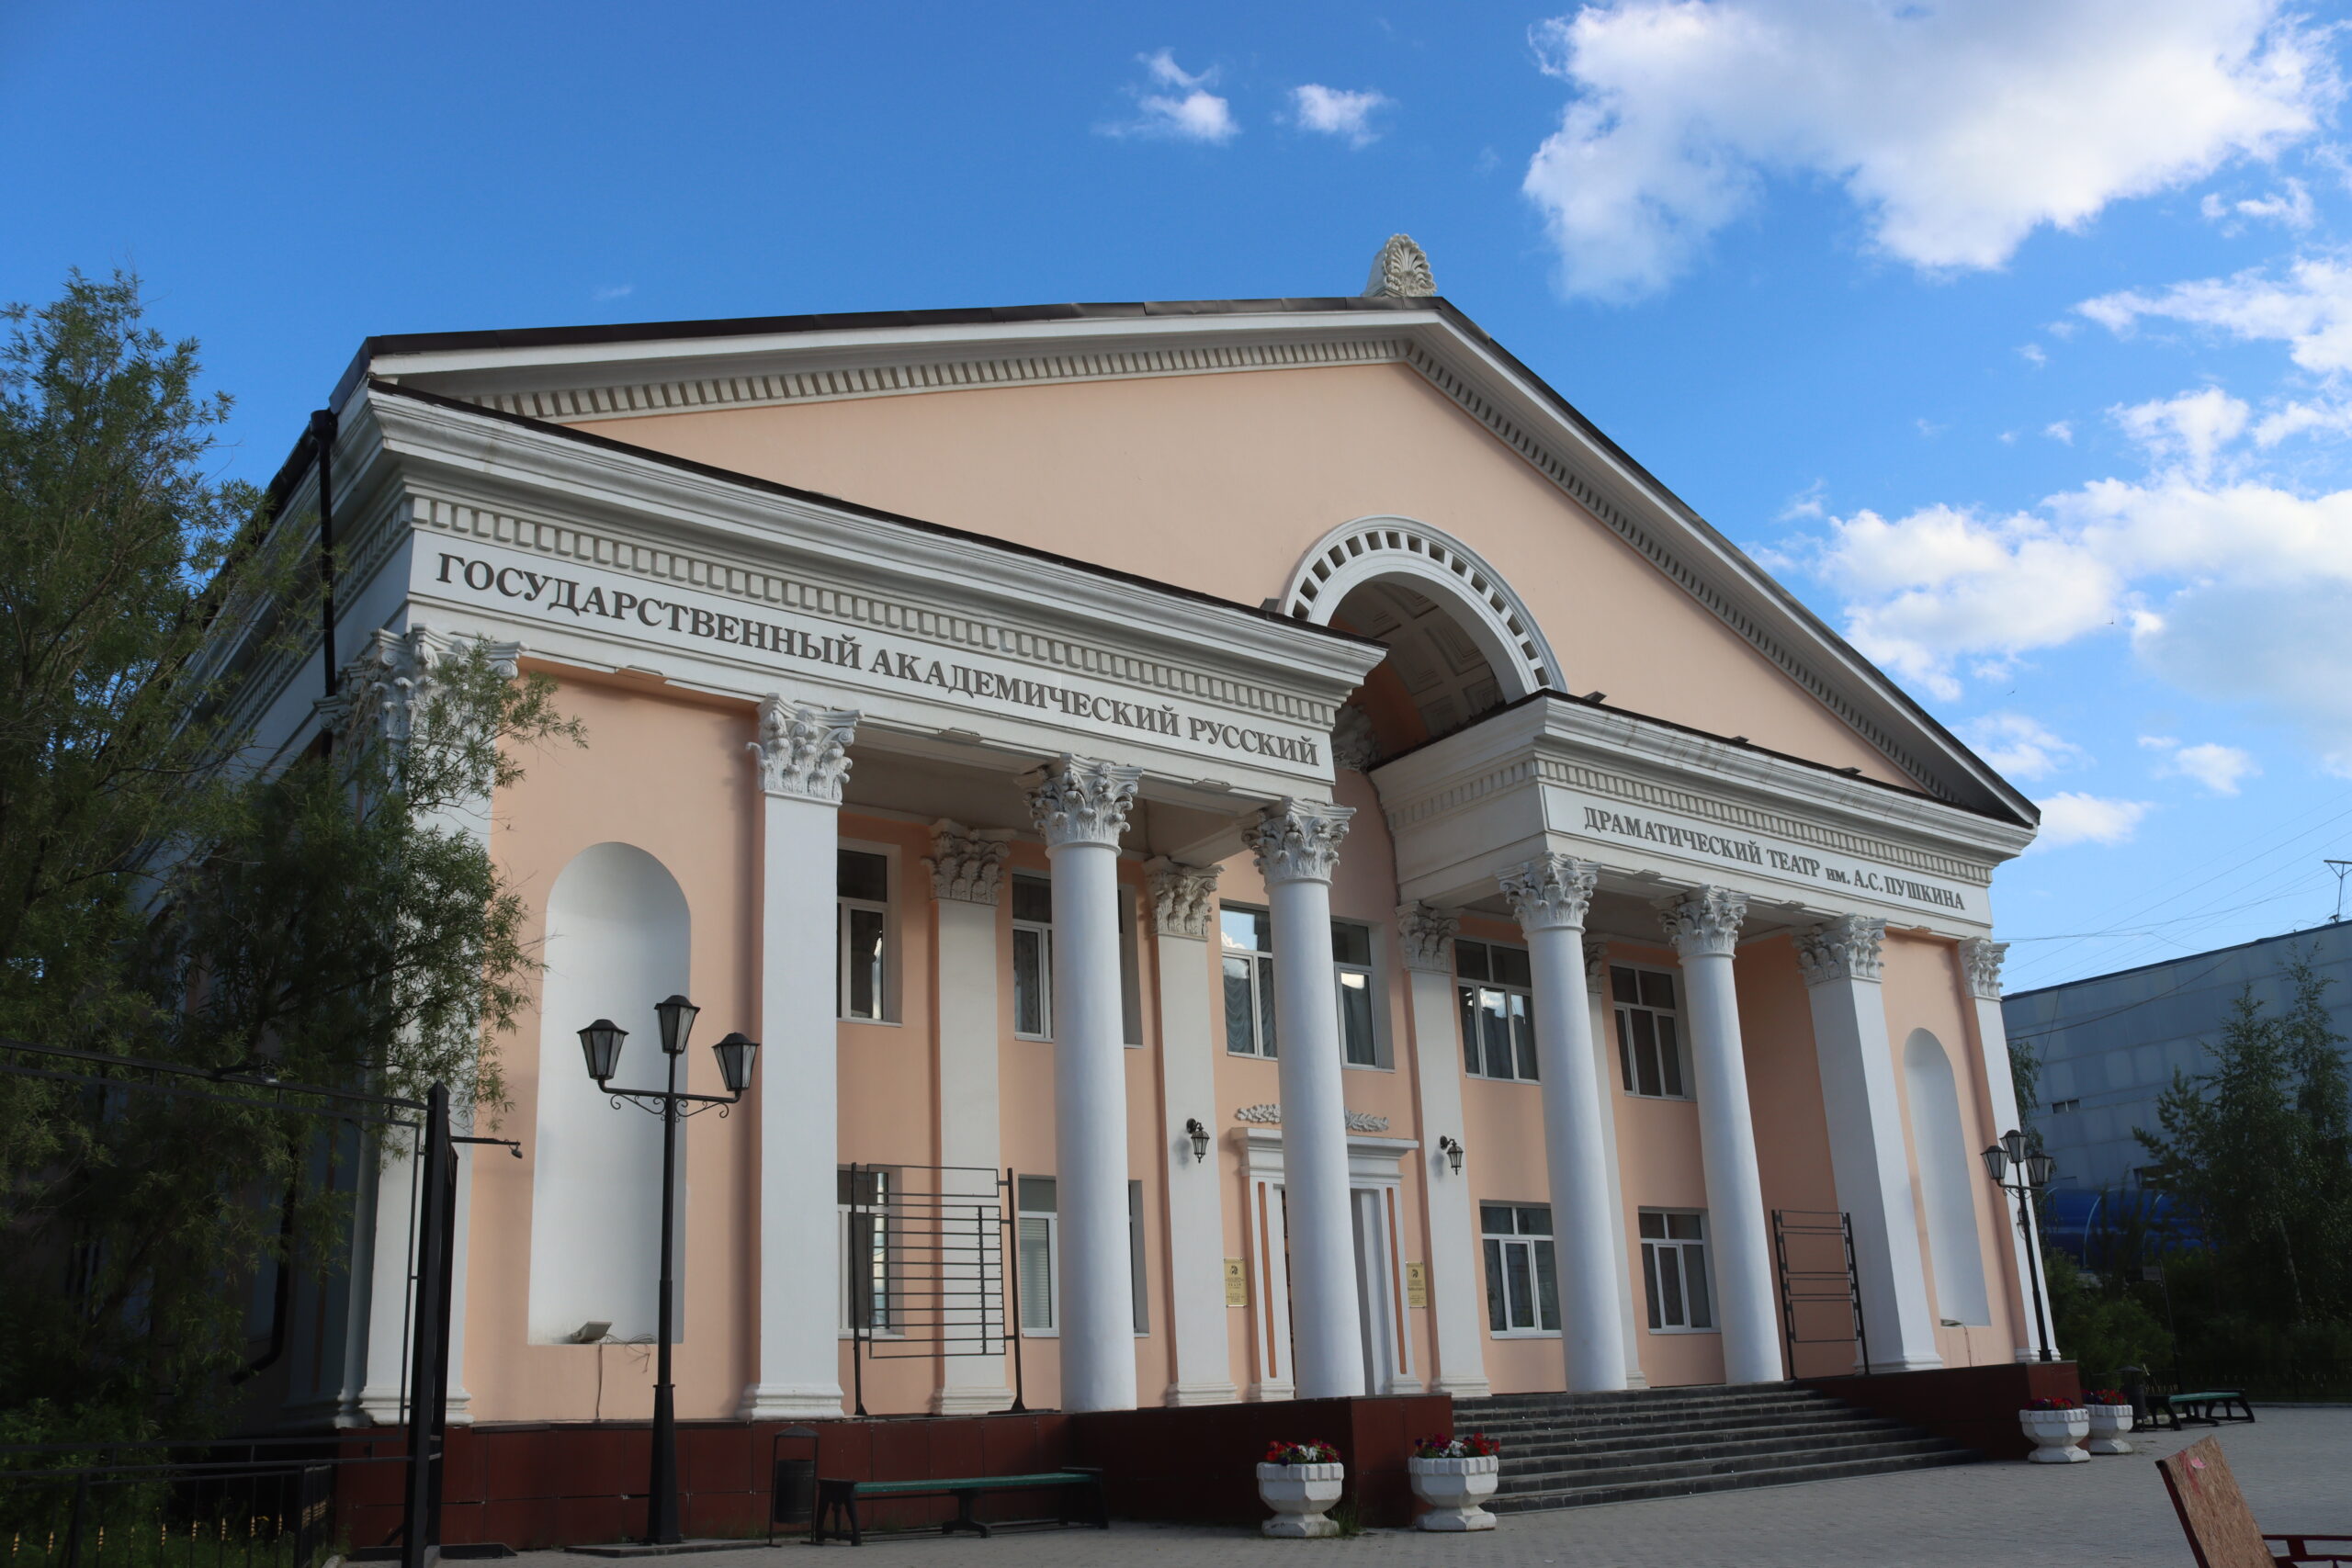 Продажа билетов на сентябрьские спектакли Русского театра началась в Якутске